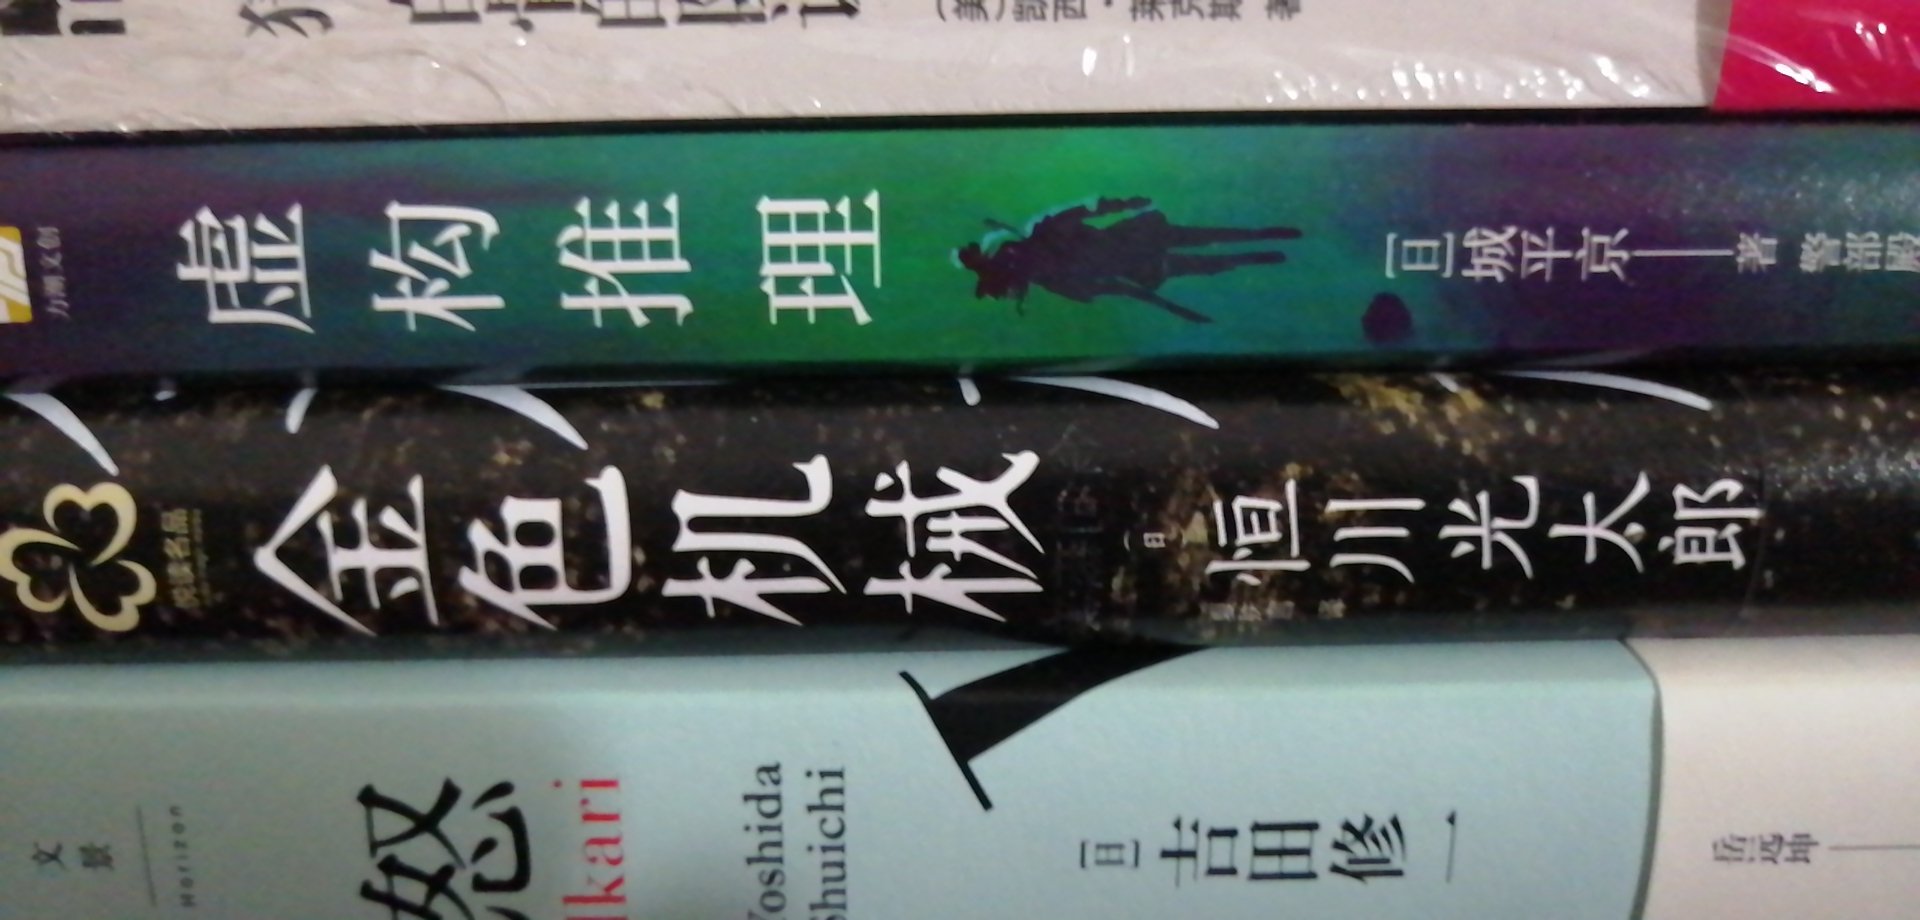 千本樱文库还是不错的，期望三津田信三的书早日出版。